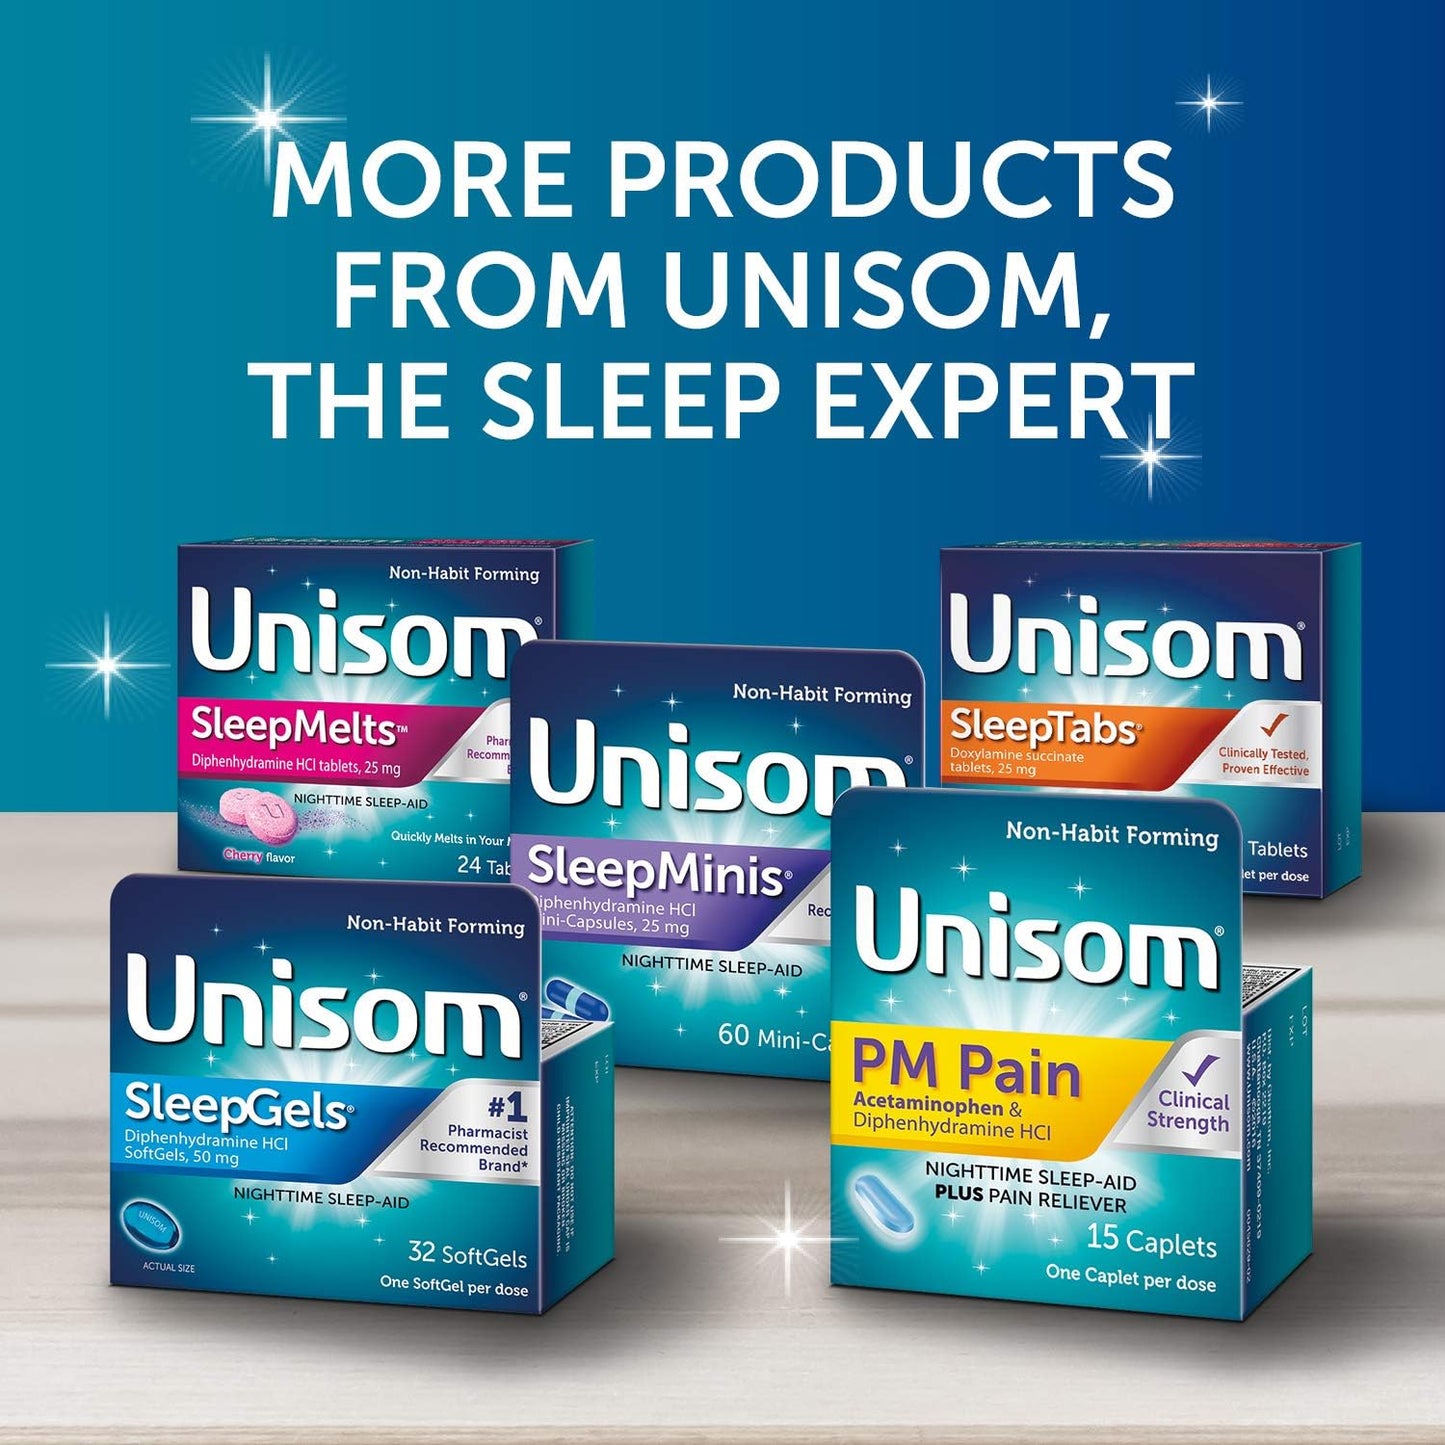 Unisom SleepTabs, Nighttime Sleep-aid, Doxylamine Succinate, 48 Tablets